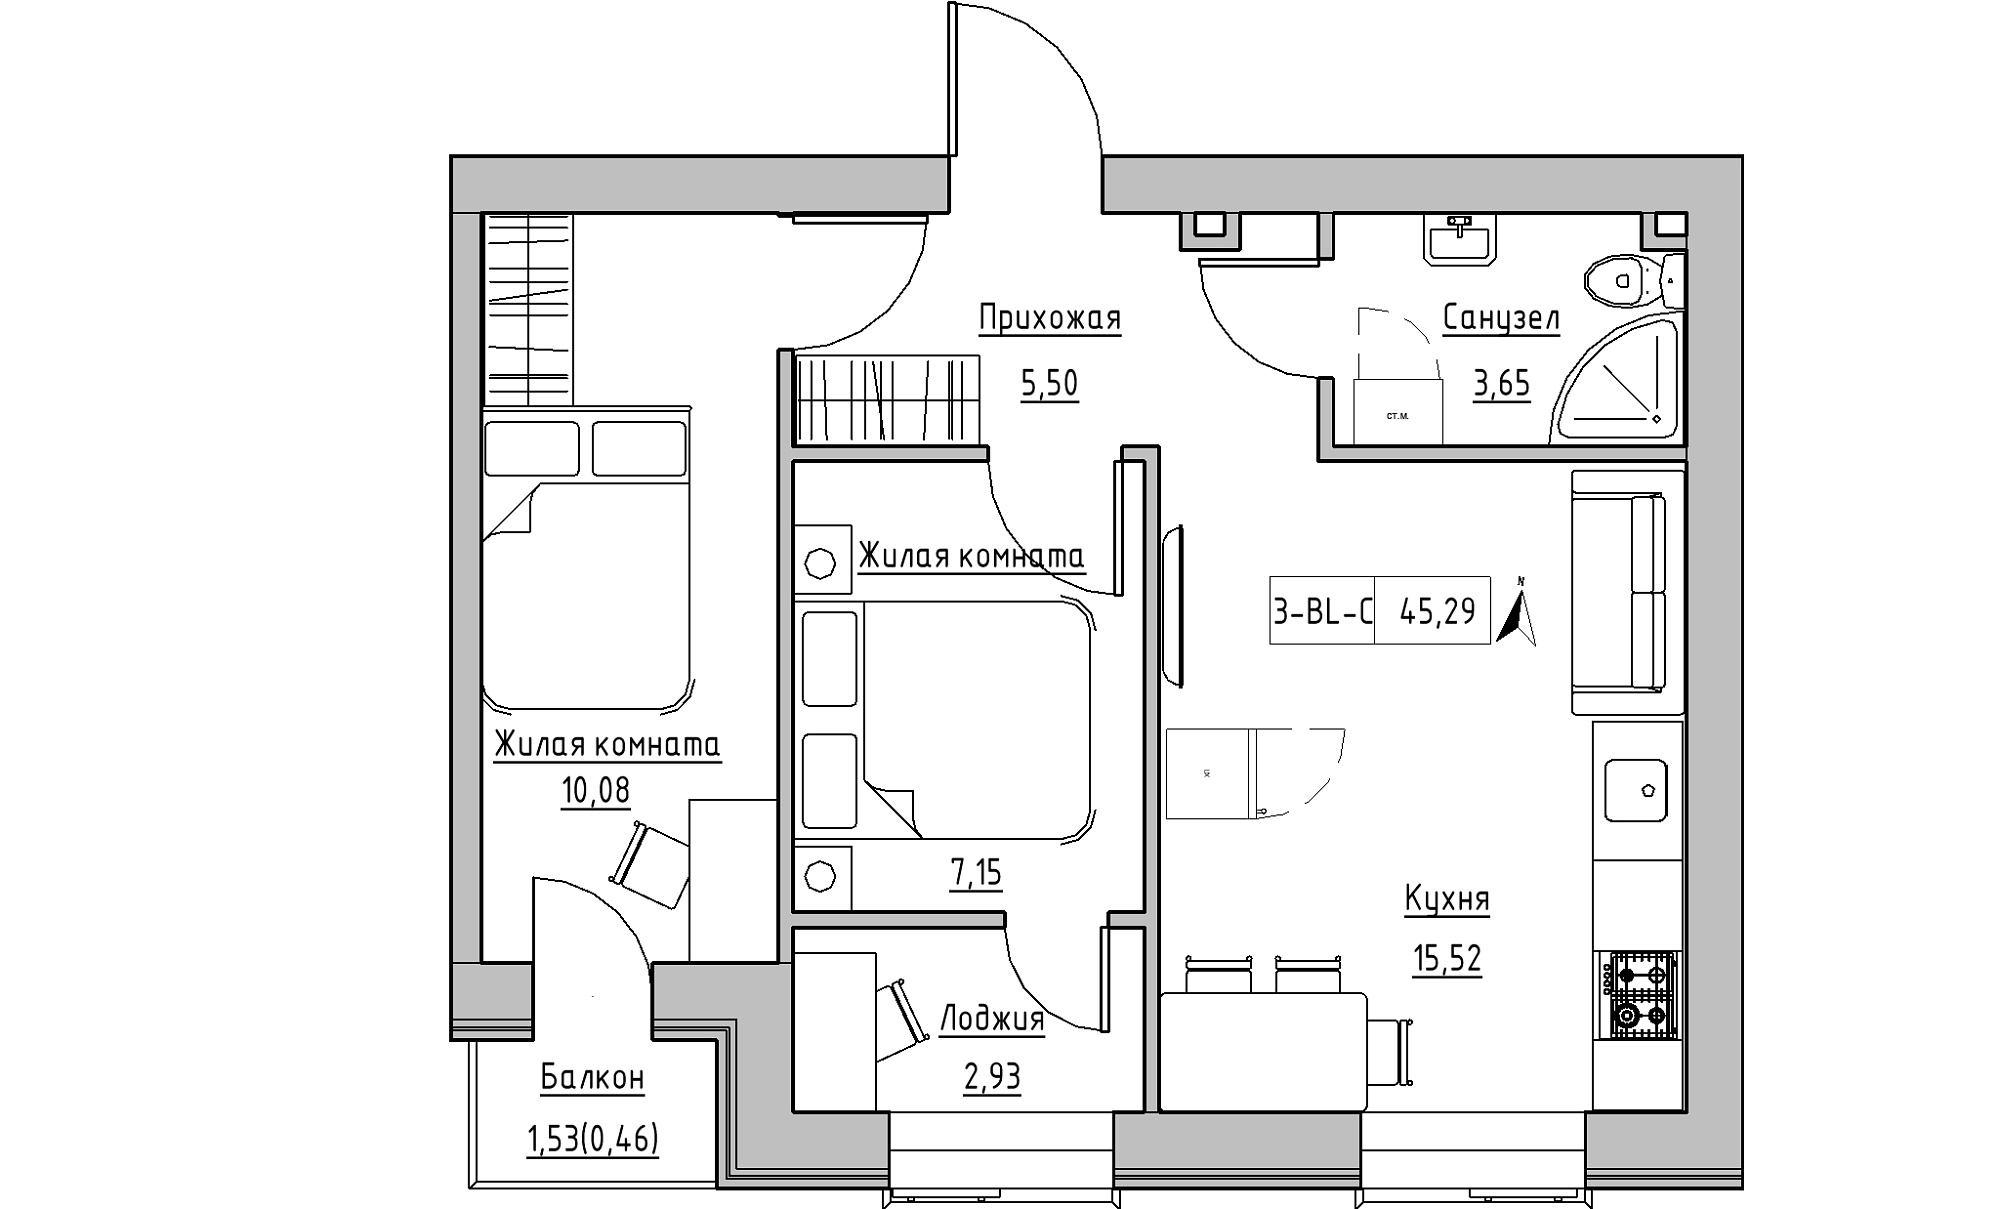 Планировка 2-к квартира площей 45.29м2, KS-016-04/0008.